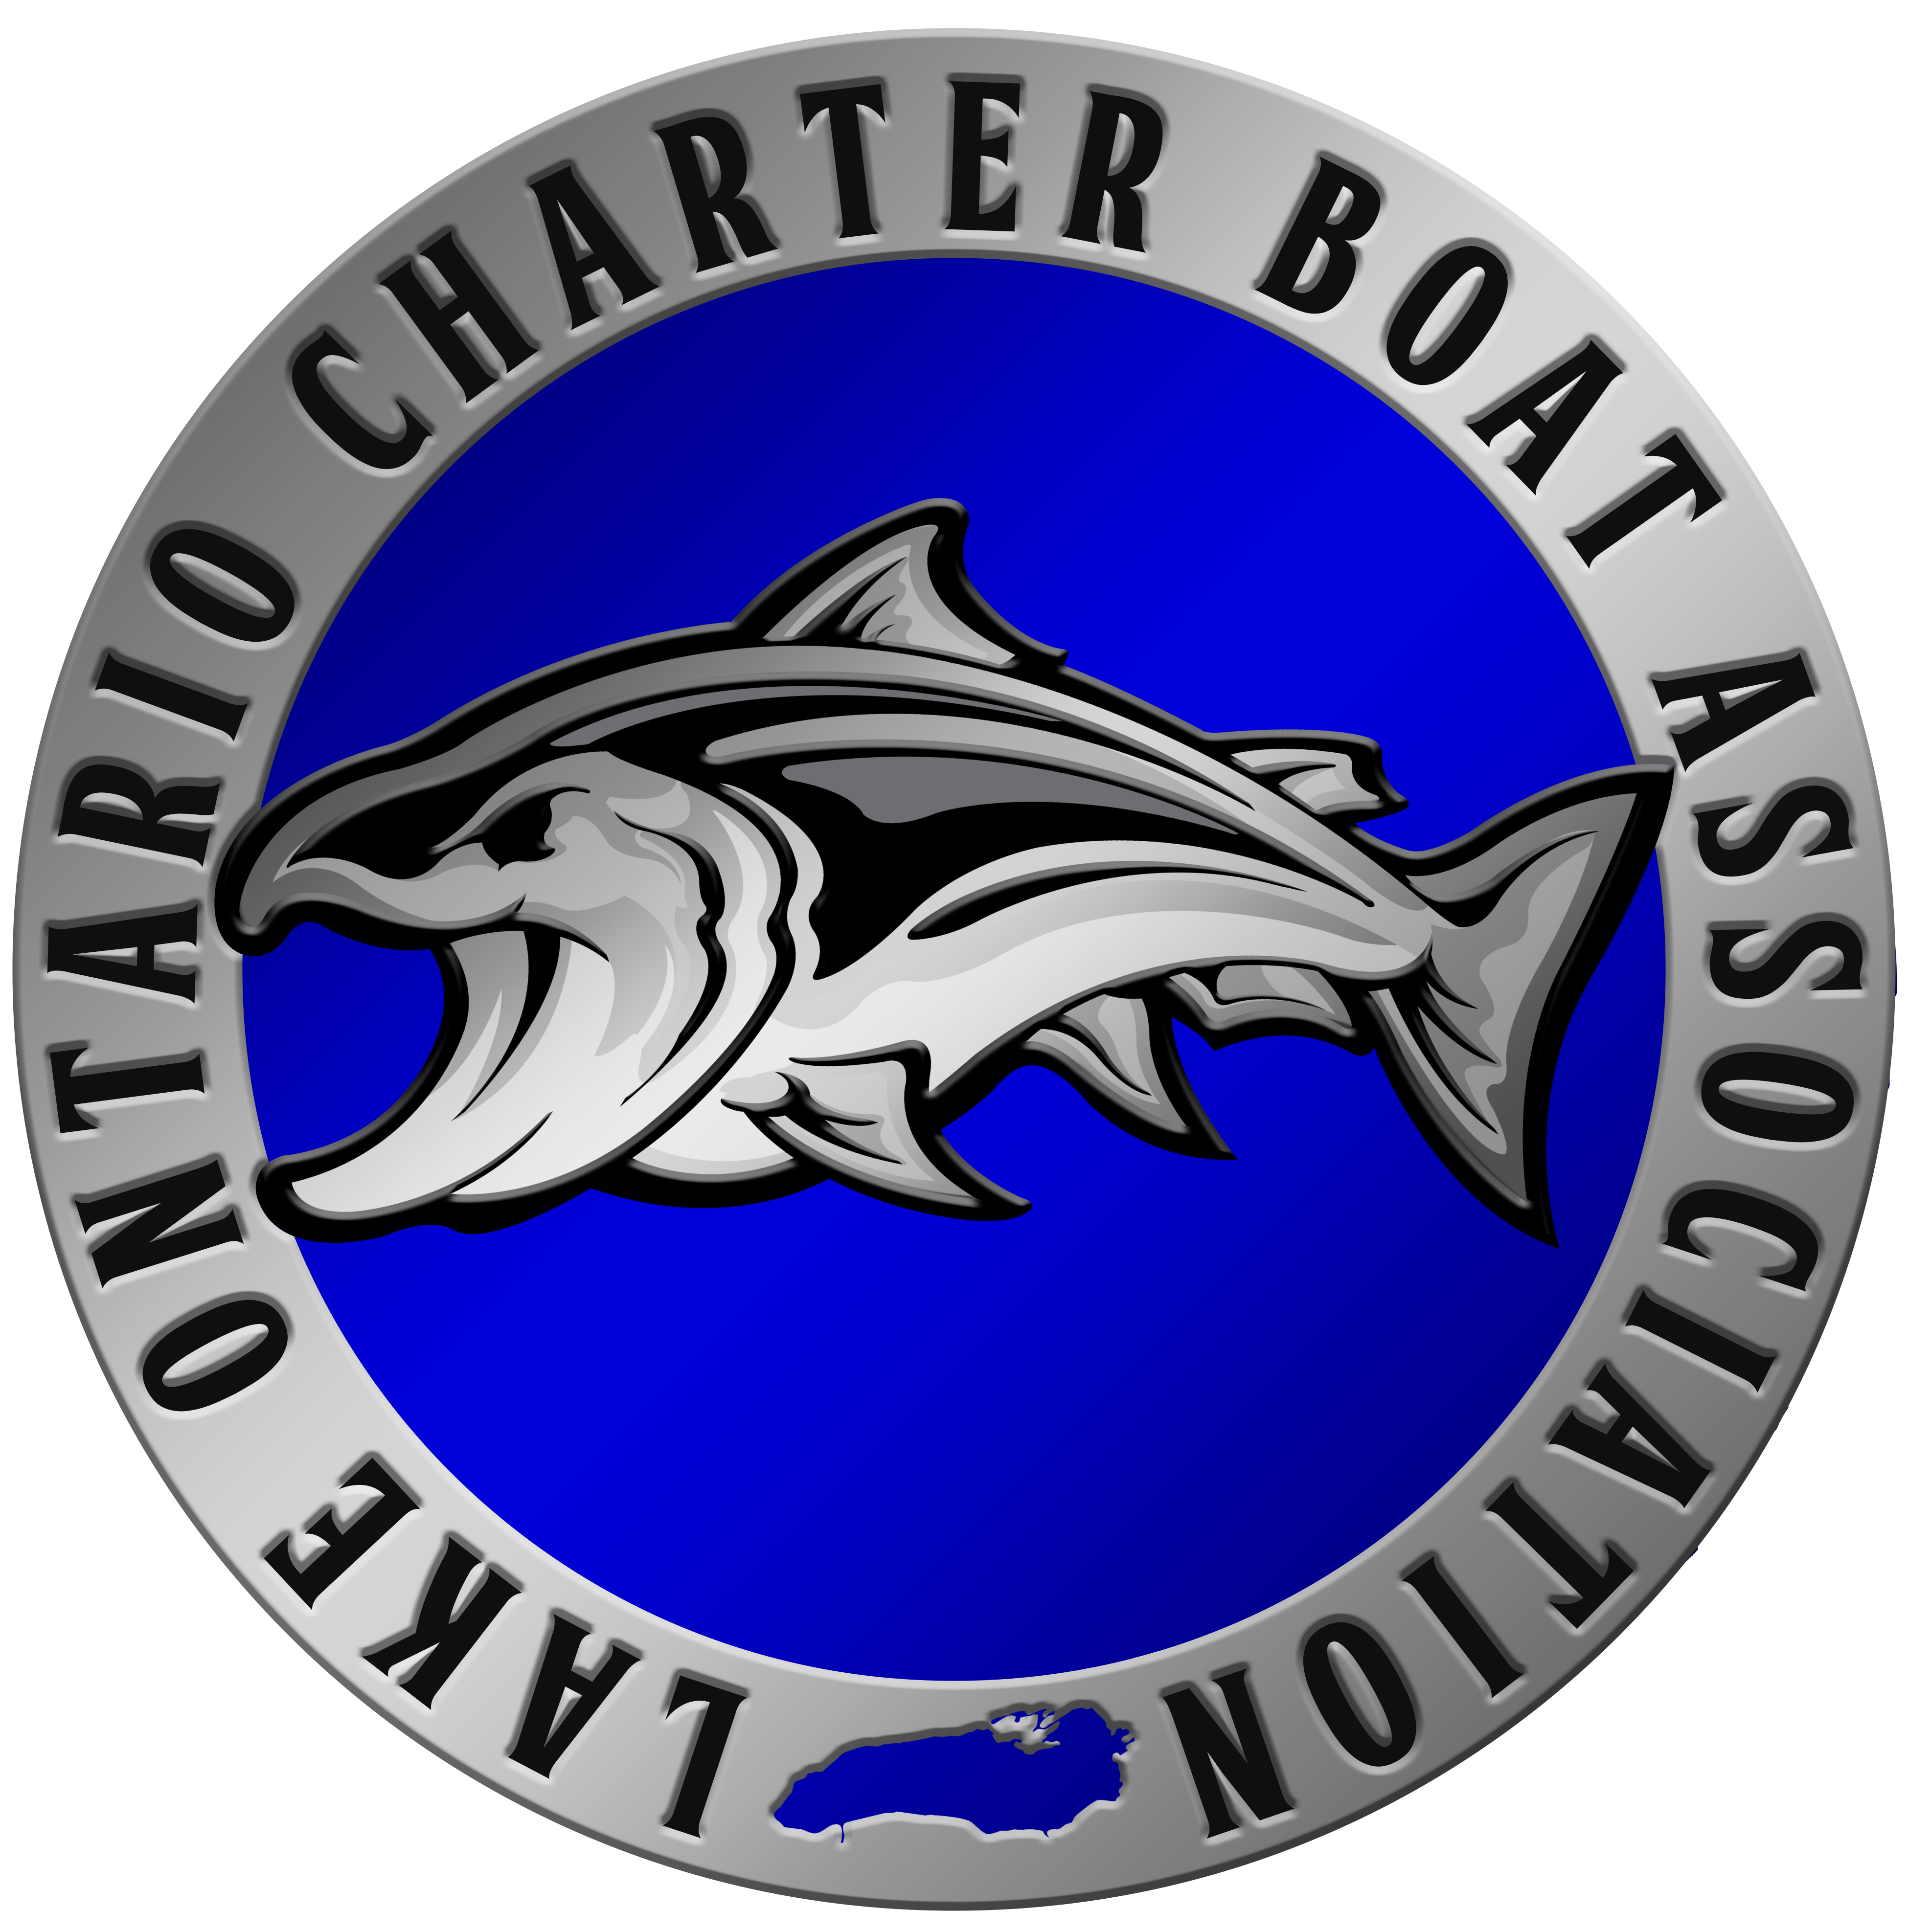 Lake Ontario Charter Boat Association- LOCBA Meeting